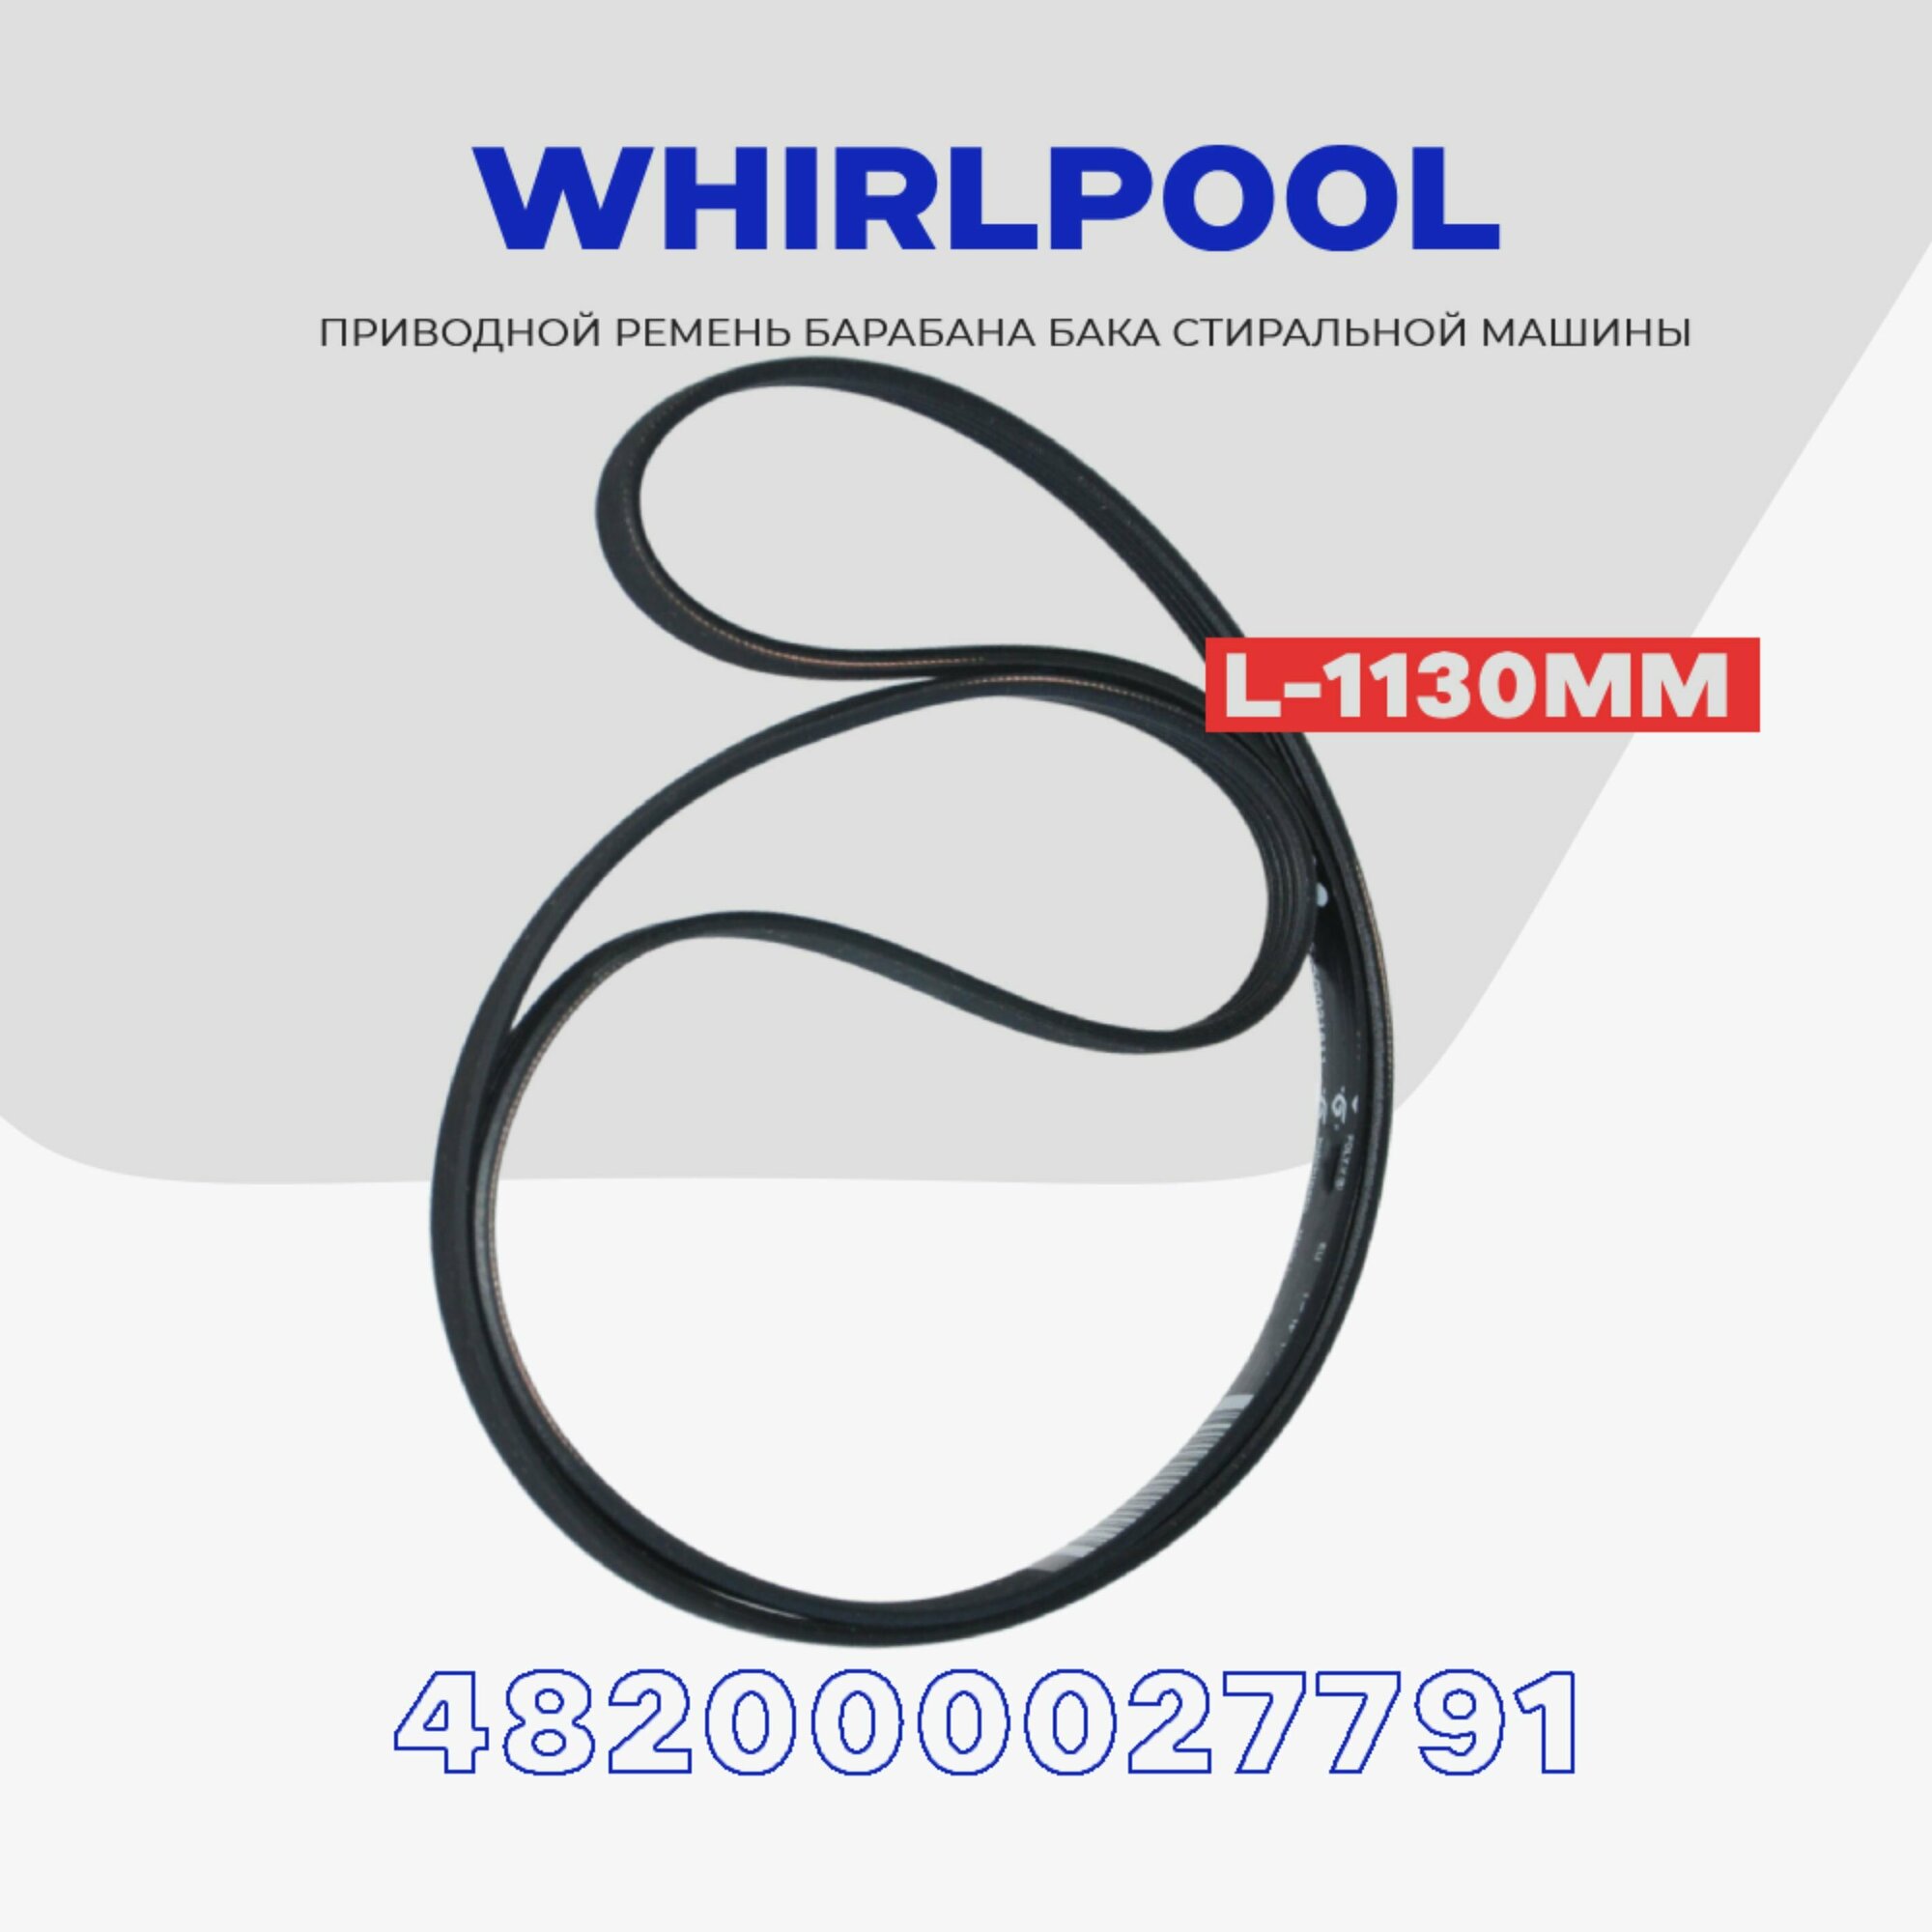 Ремень барабана для стиральной машины Whirlpool 1195 H7 приводной (482000027791) / L - 1130мм